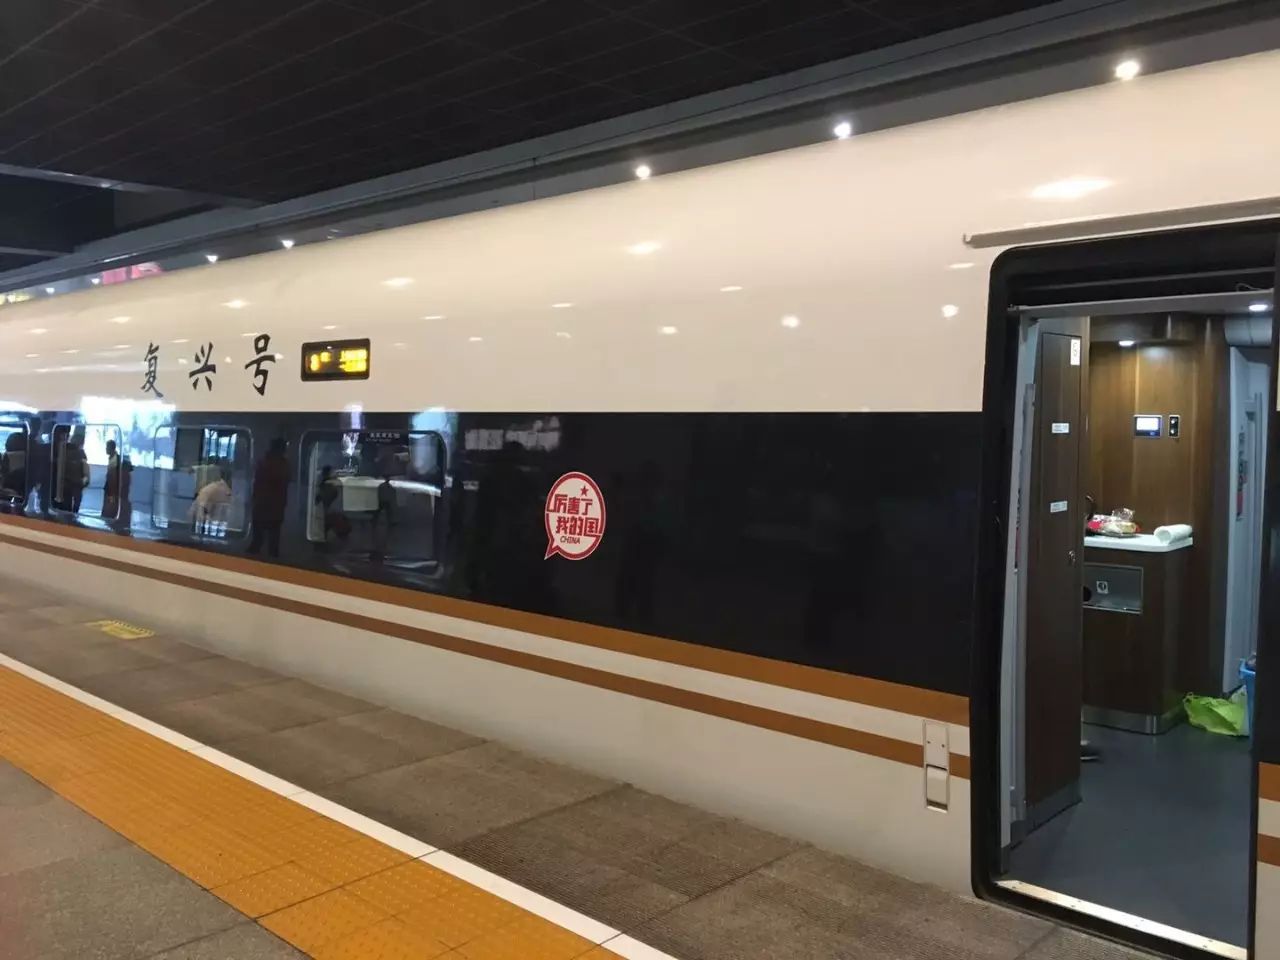 新款复兴号智能动车组上线运营，北京站首开G字头列车-千龙网·中国首都网